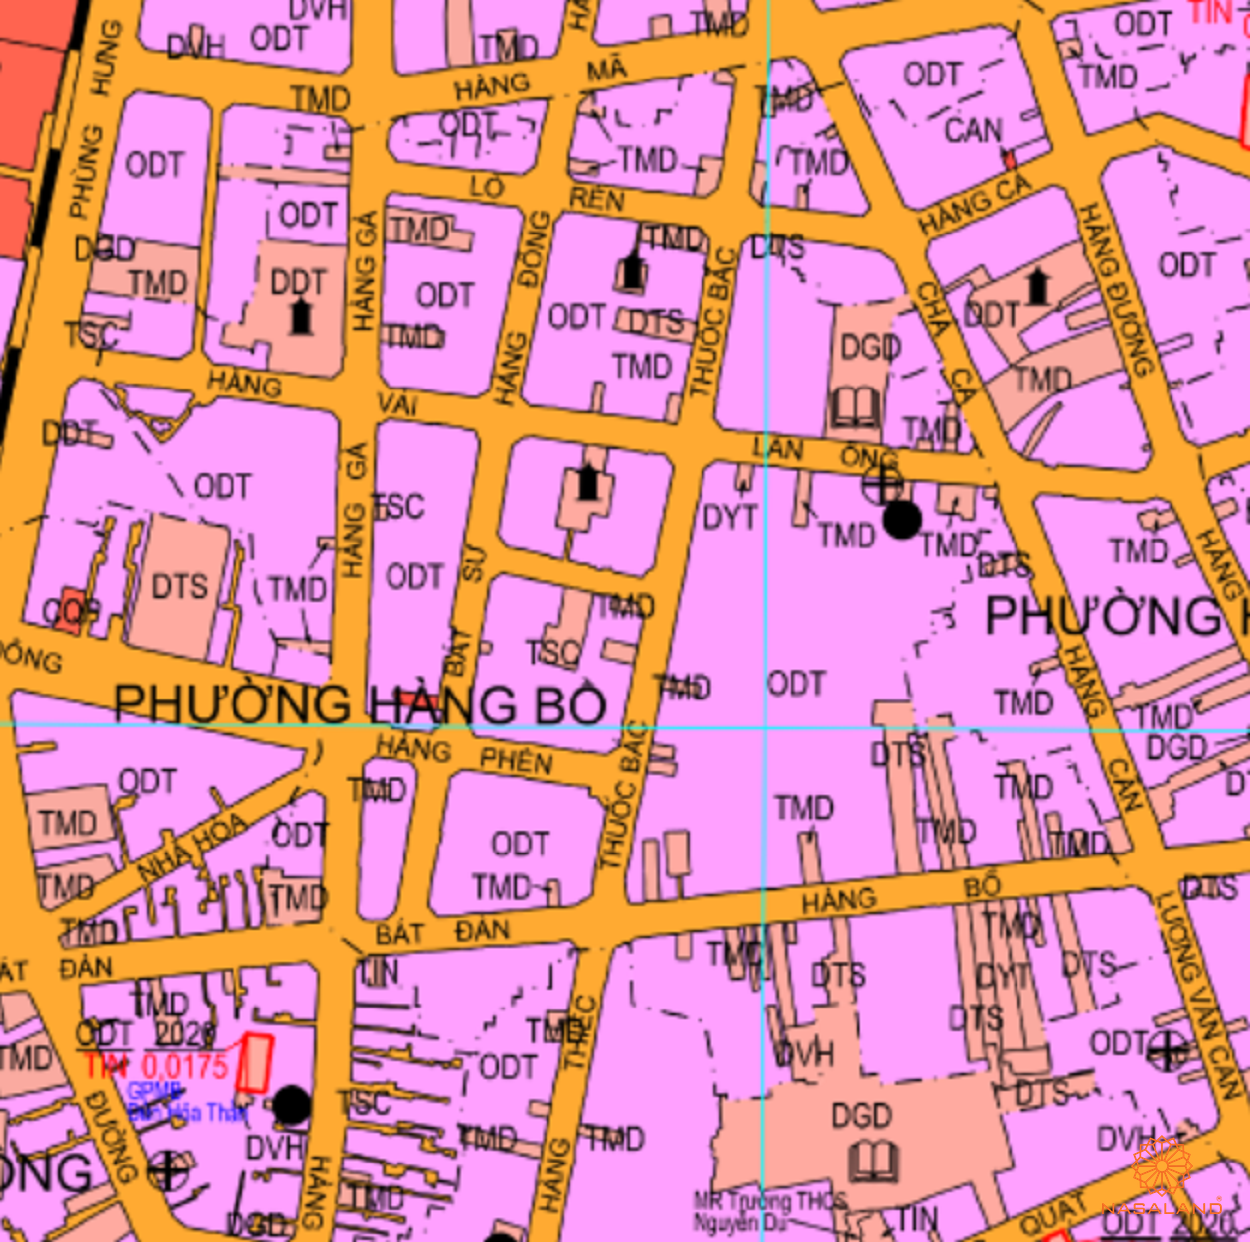 Bản đồ quy hoạch sử dụng đất Phường Hàng Bồ theo bản đồ quy hoạch sử dụng đất năm 2020 Quận Hoàn Kiếm, Thành phố Hà Nội.